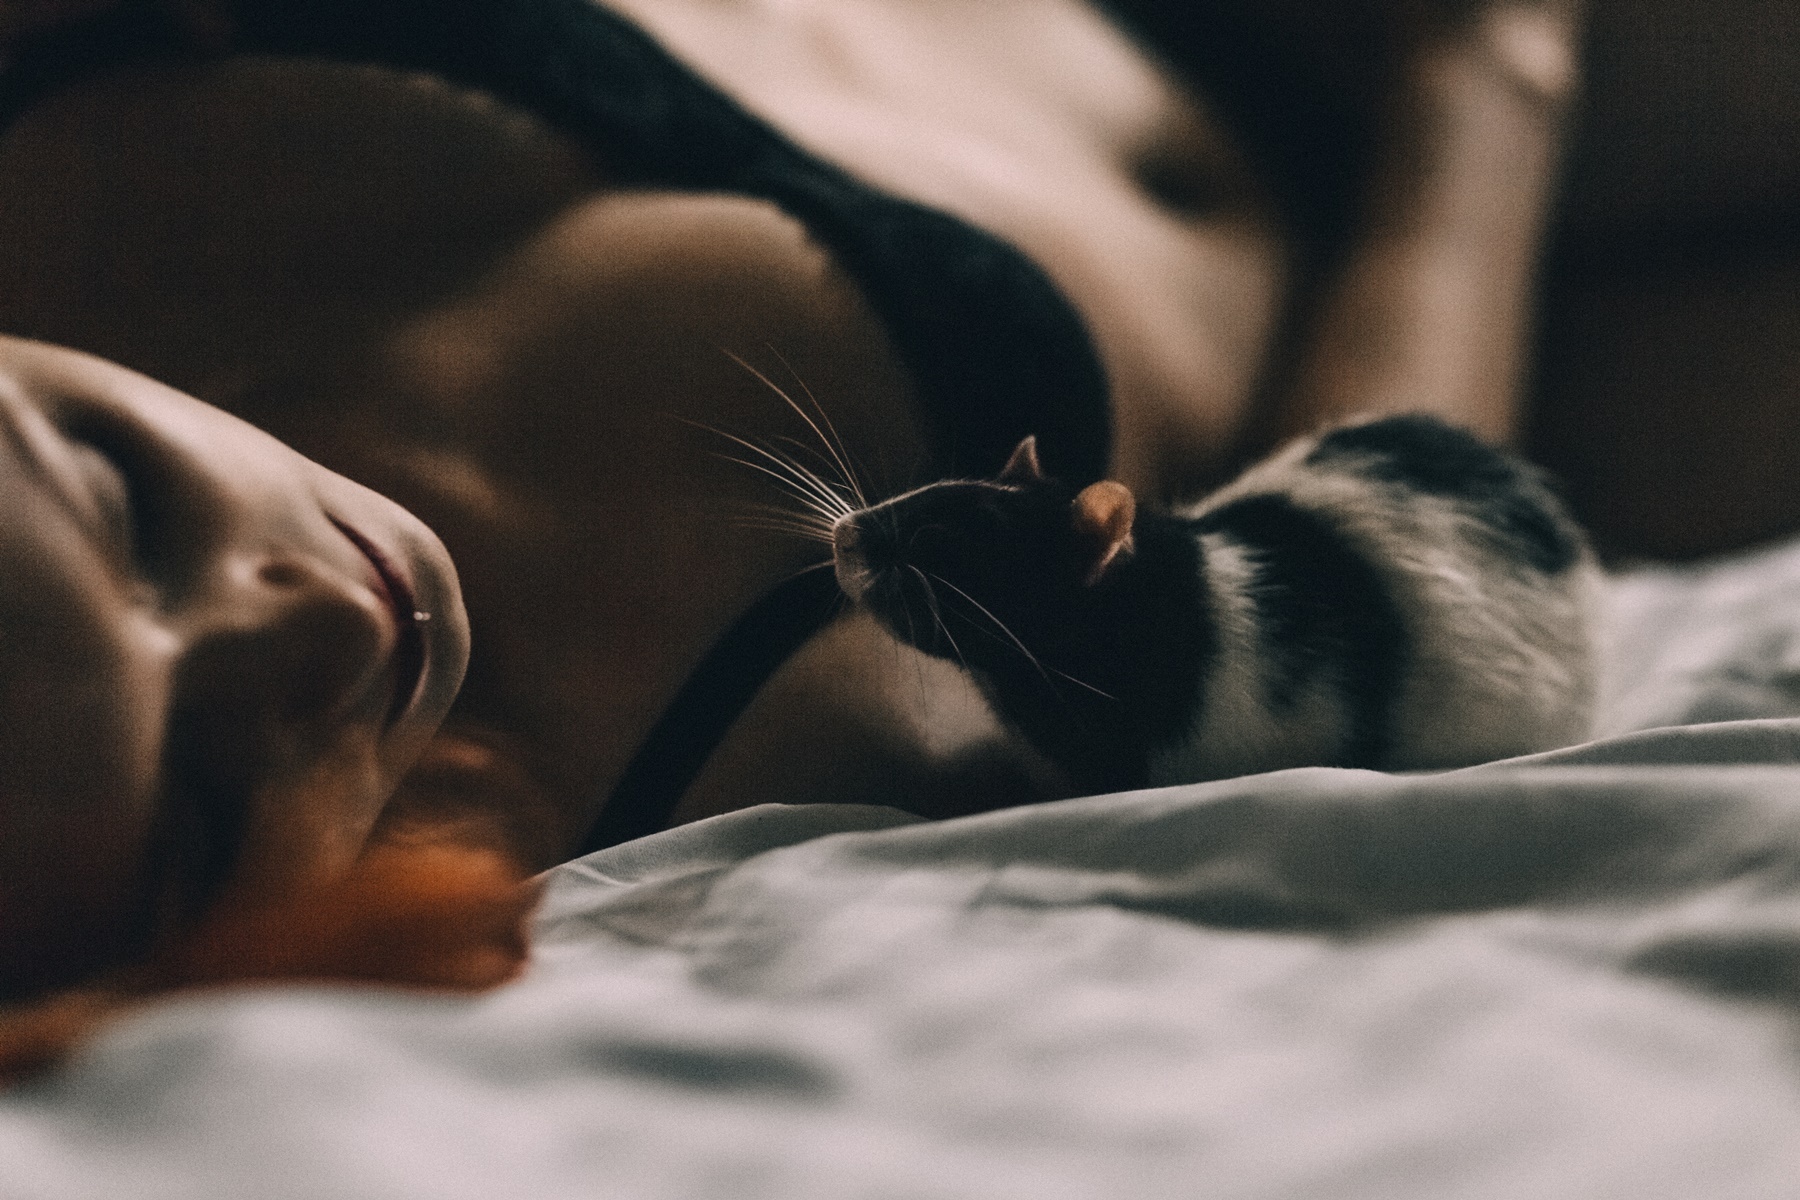 Πώς να κοιμηθώ εύκολα και γρήγορα: 17 απλά tips για τέλειο ύπνο